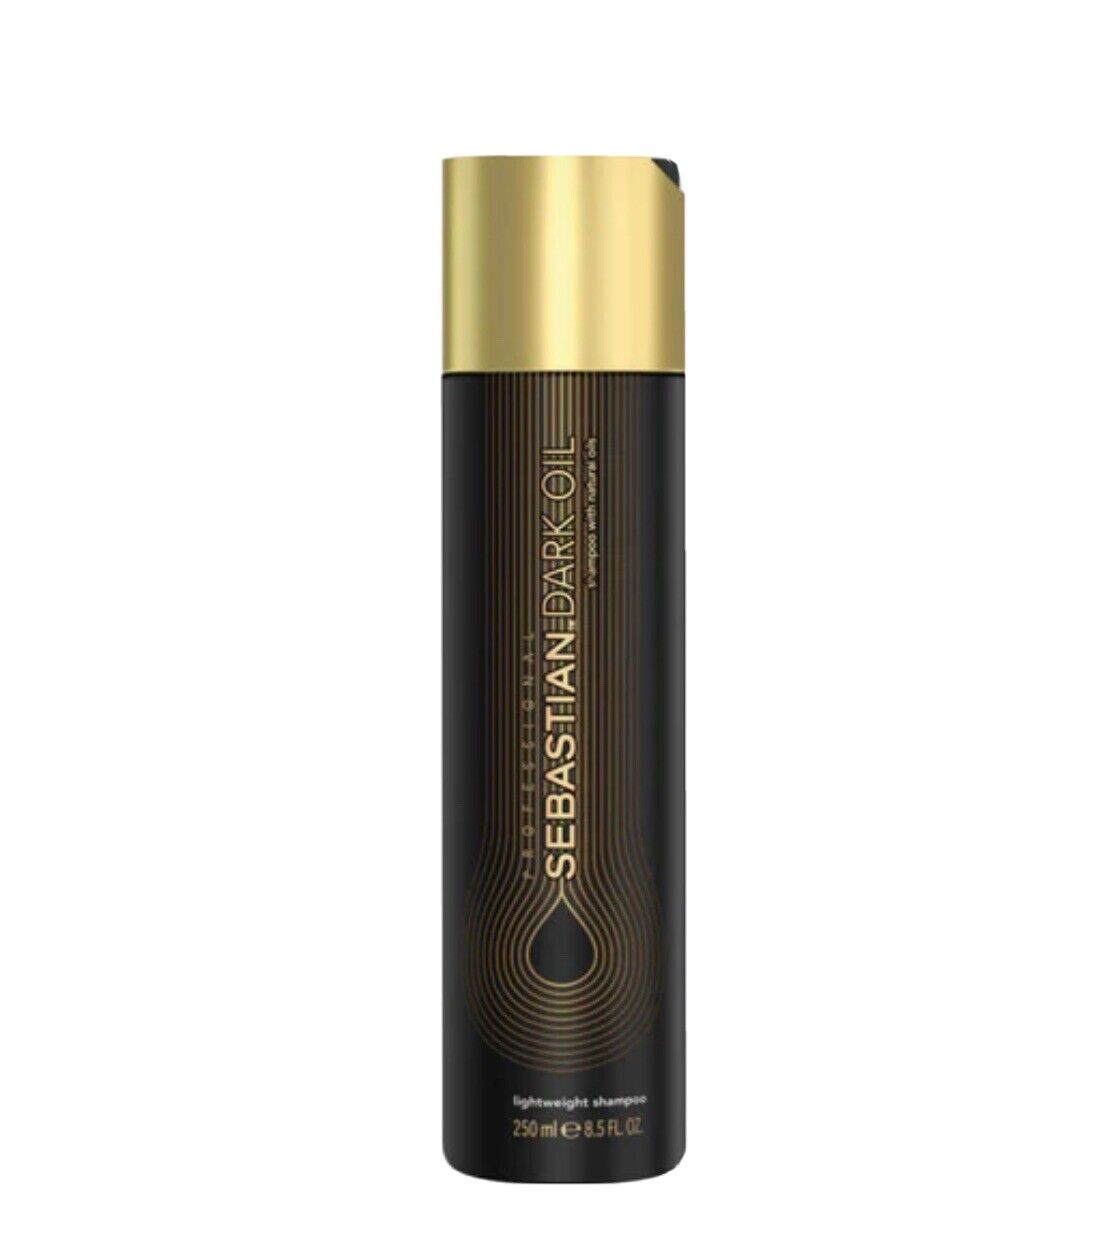 SEBASTIAN - Dark Oil Hair Shampoo 250ml